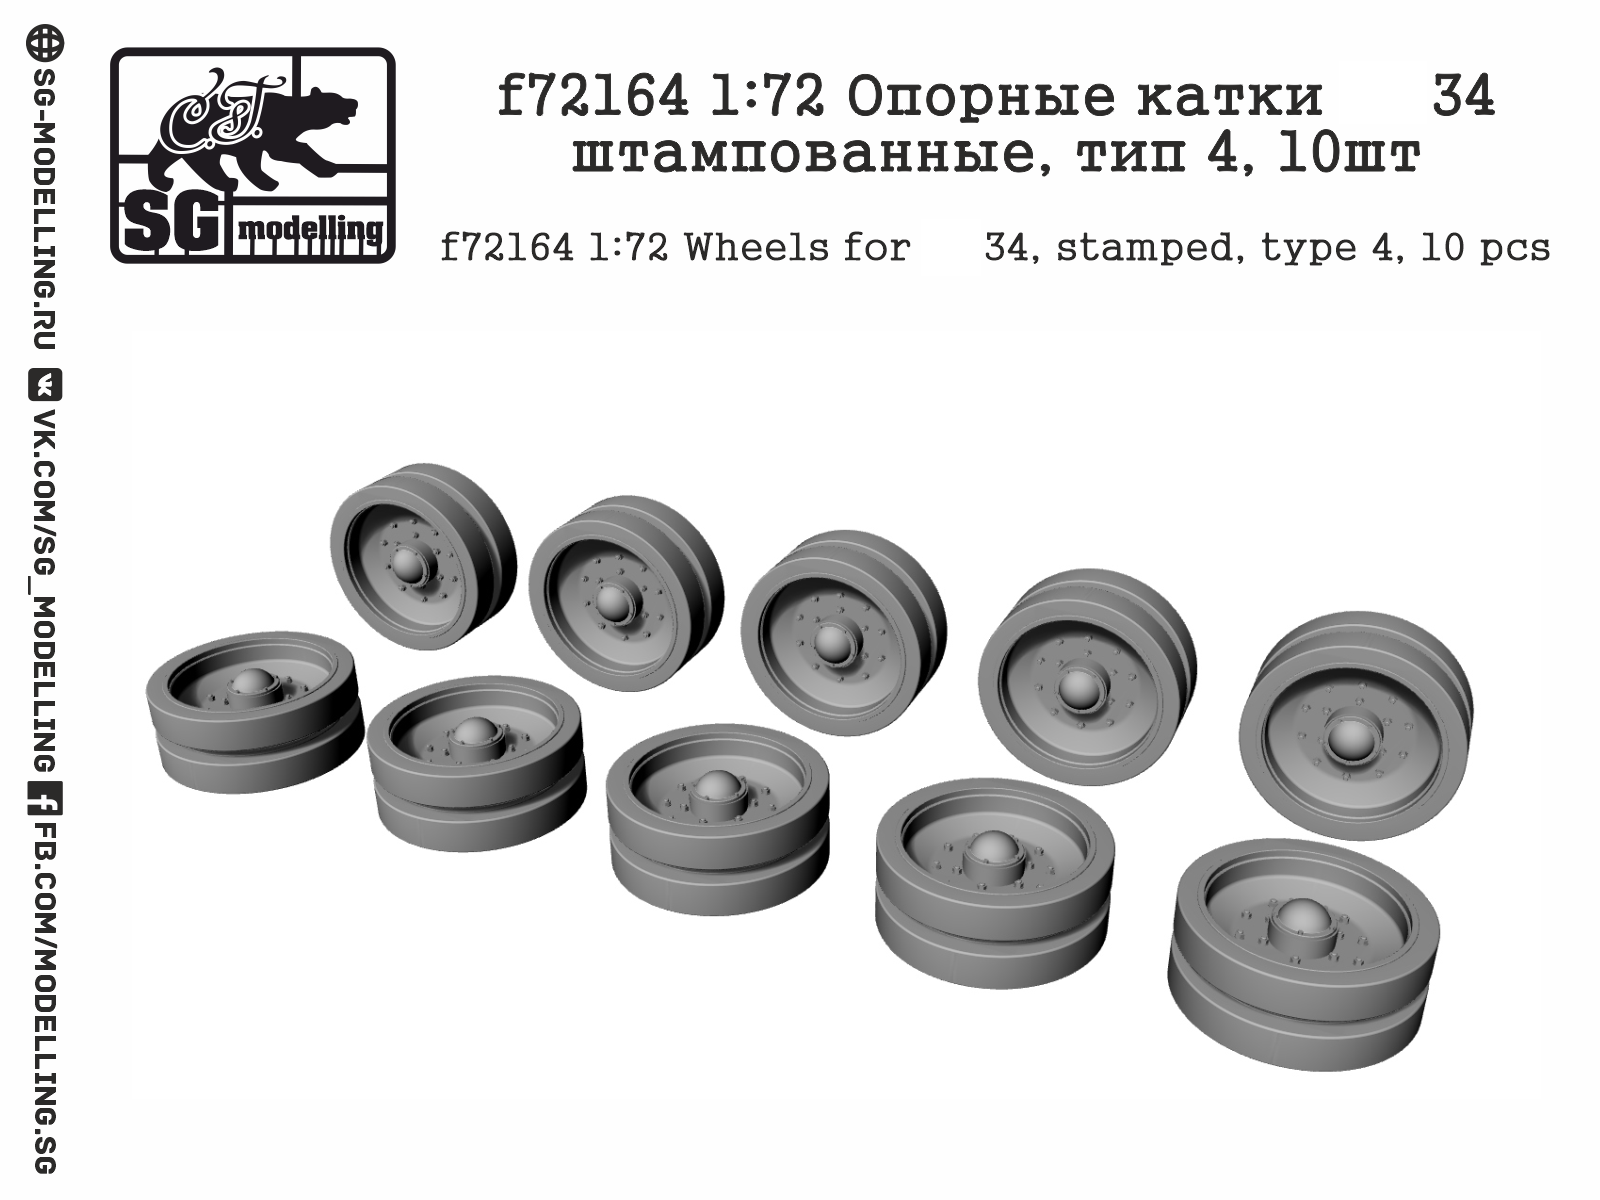 f72164  дополнения из смолы  Опорные катки Танк-34 штампованные, тип 4, 10шт  (1:72)